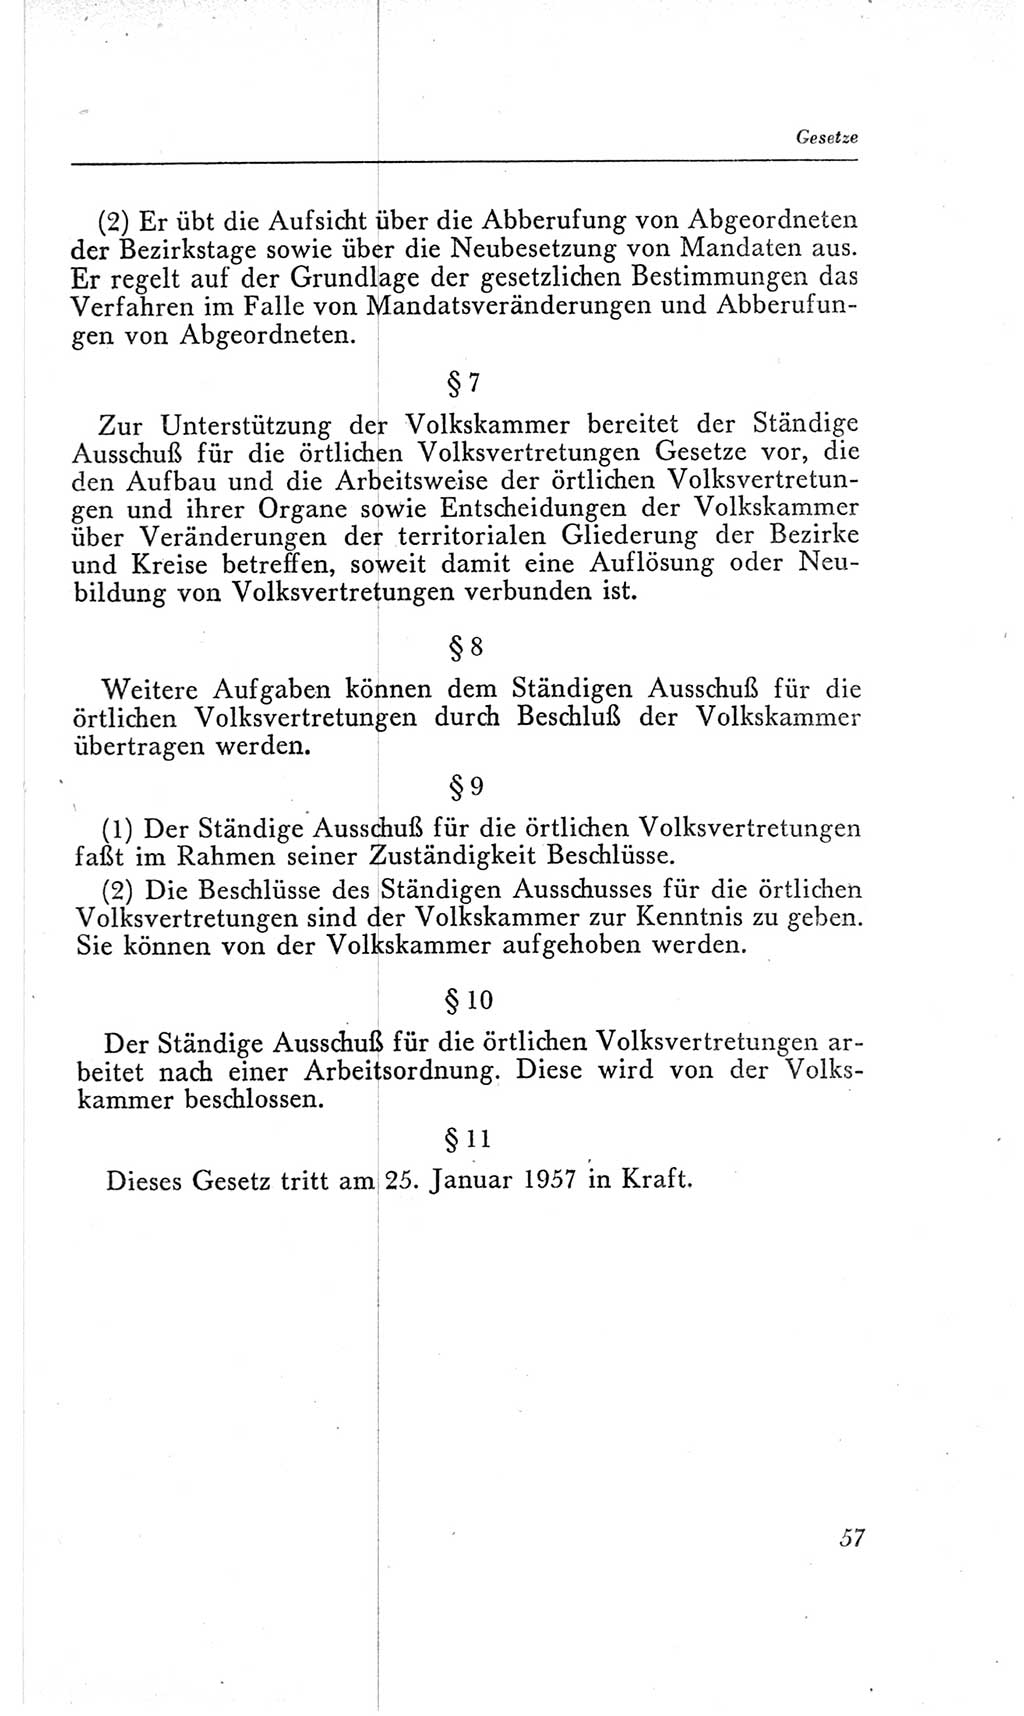 Handbuch der Volkskammer (VK) der Deutschen Demokratischen Republik (DDR), 2. Wahlperiode 1954-1958, Seite 57 (Hdb. VK. DDR, 2. WP. 1954-1958, S. 57)